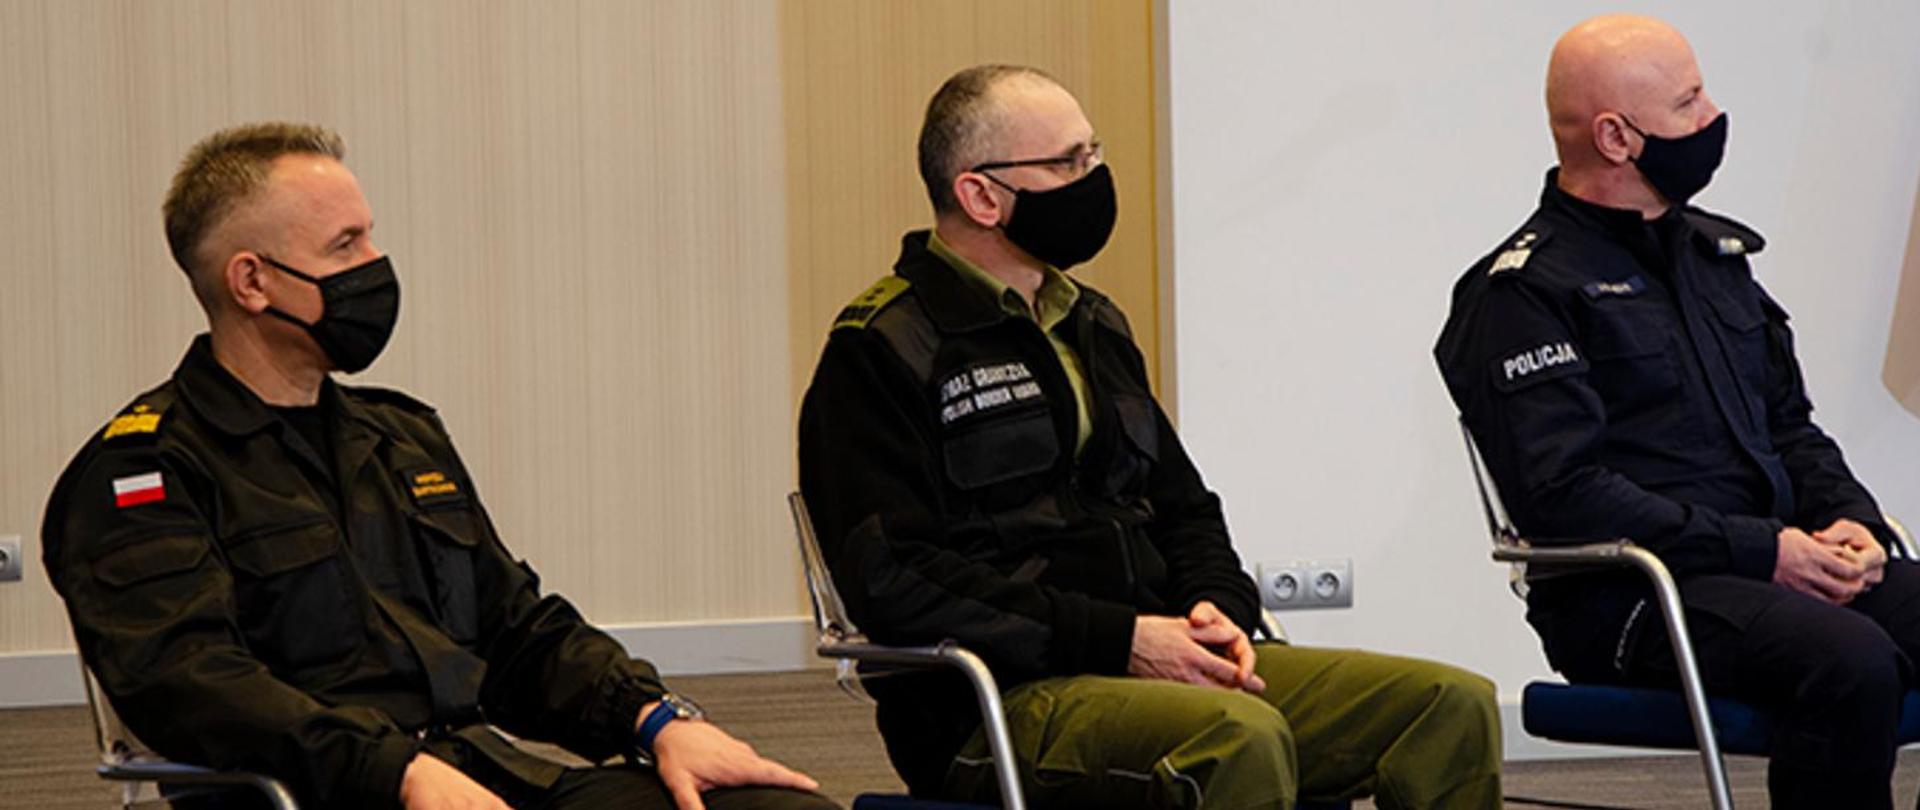 Trzy osoby w mundurach siedzą na krzesłach w maseczkach na twarzach.